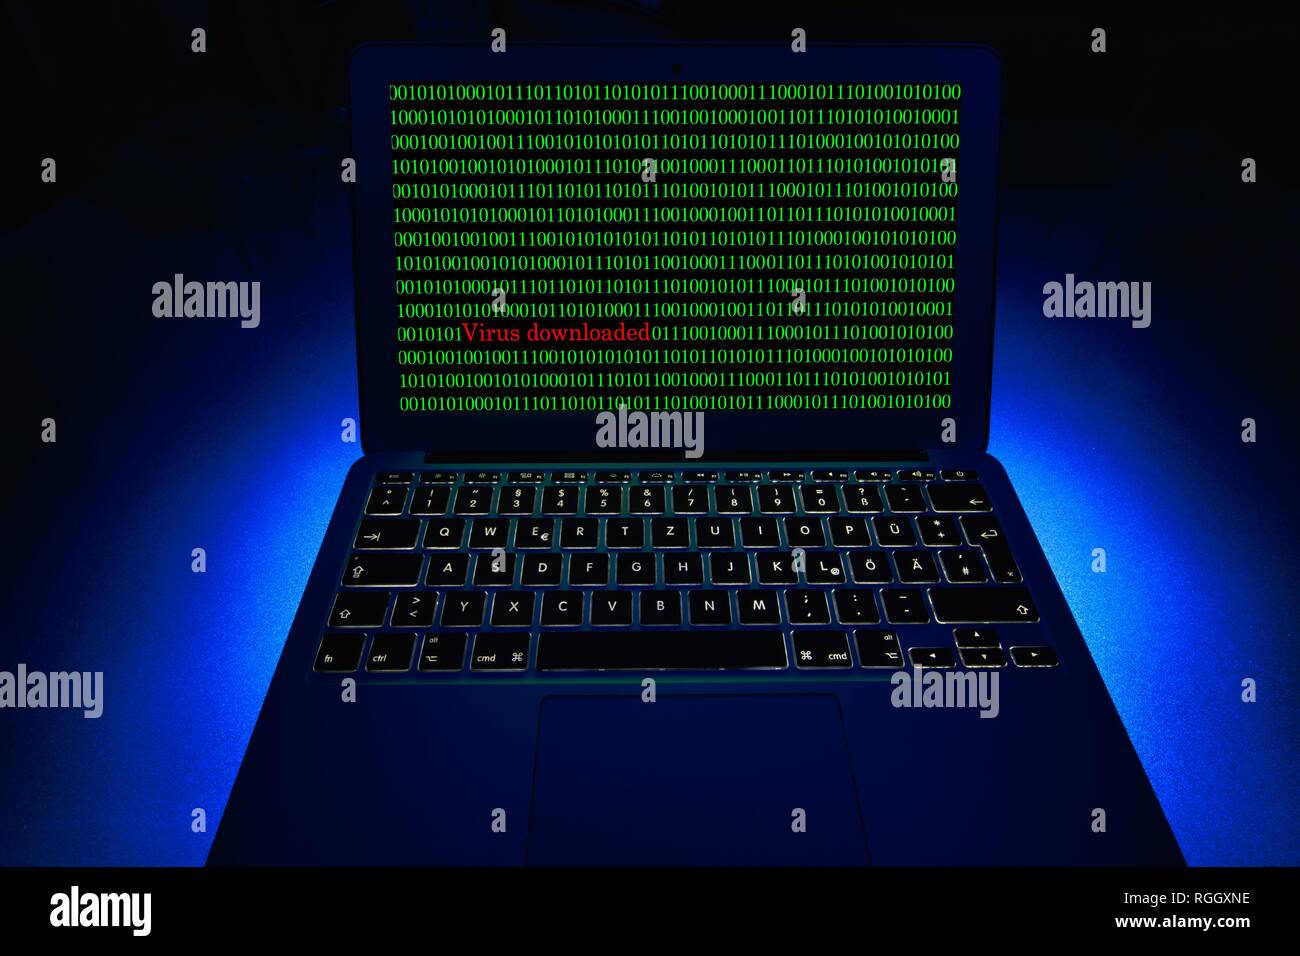 Ordinateur portable avec des nombres binaires à l'écran. Image symbole du virus malware, alarme, la criminalité informatique, la protection des données, Bade-Wurtemberg Banque D'Images